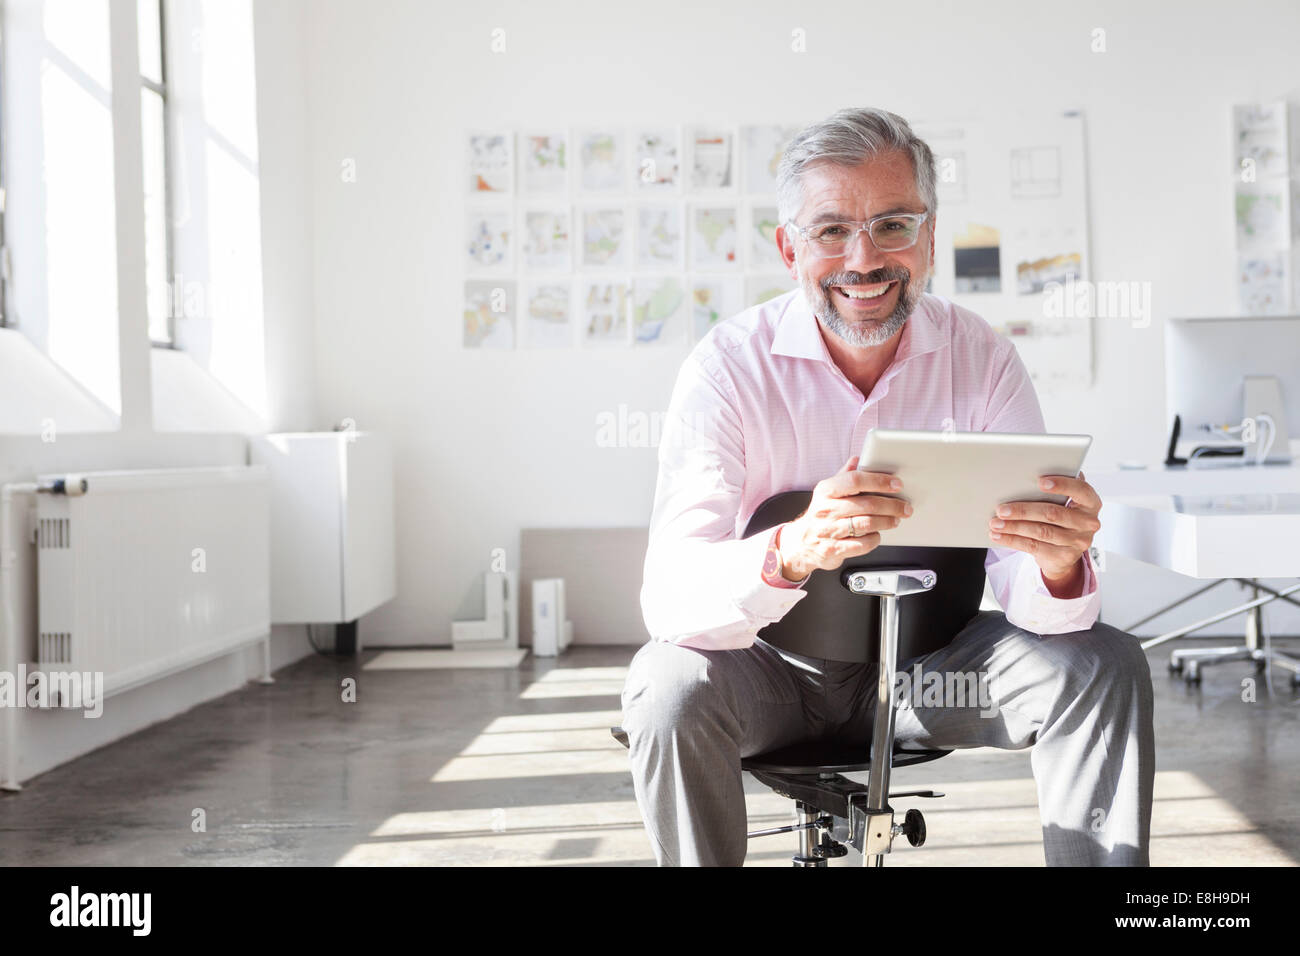 Ritratto di imprenditore sorridente con tavoletta digitale in un ufficio Foto Stock